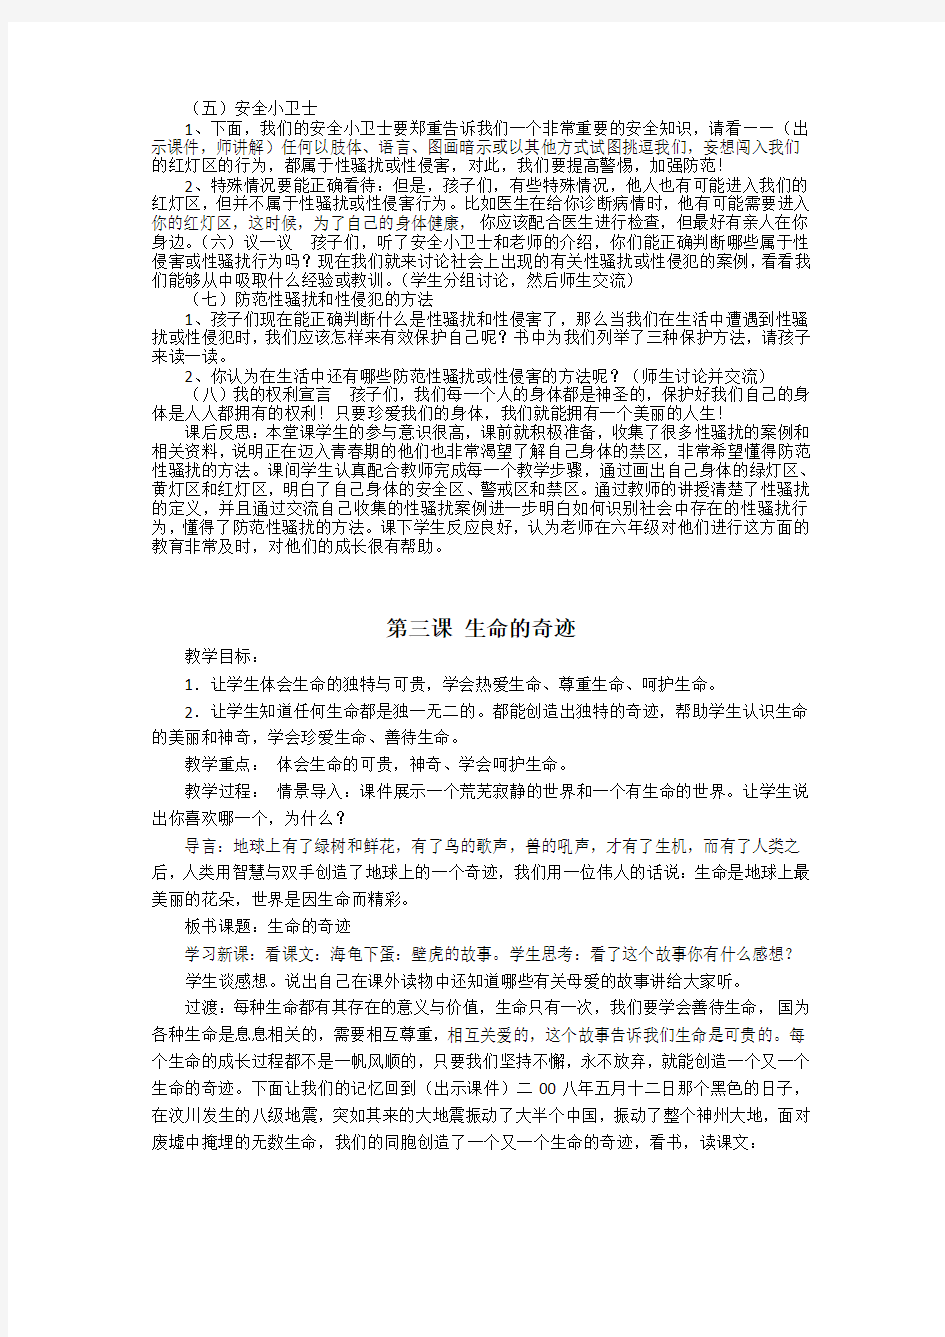 武汉版三年级生命安全教育全册教案(已排版好的,可以直接打印)